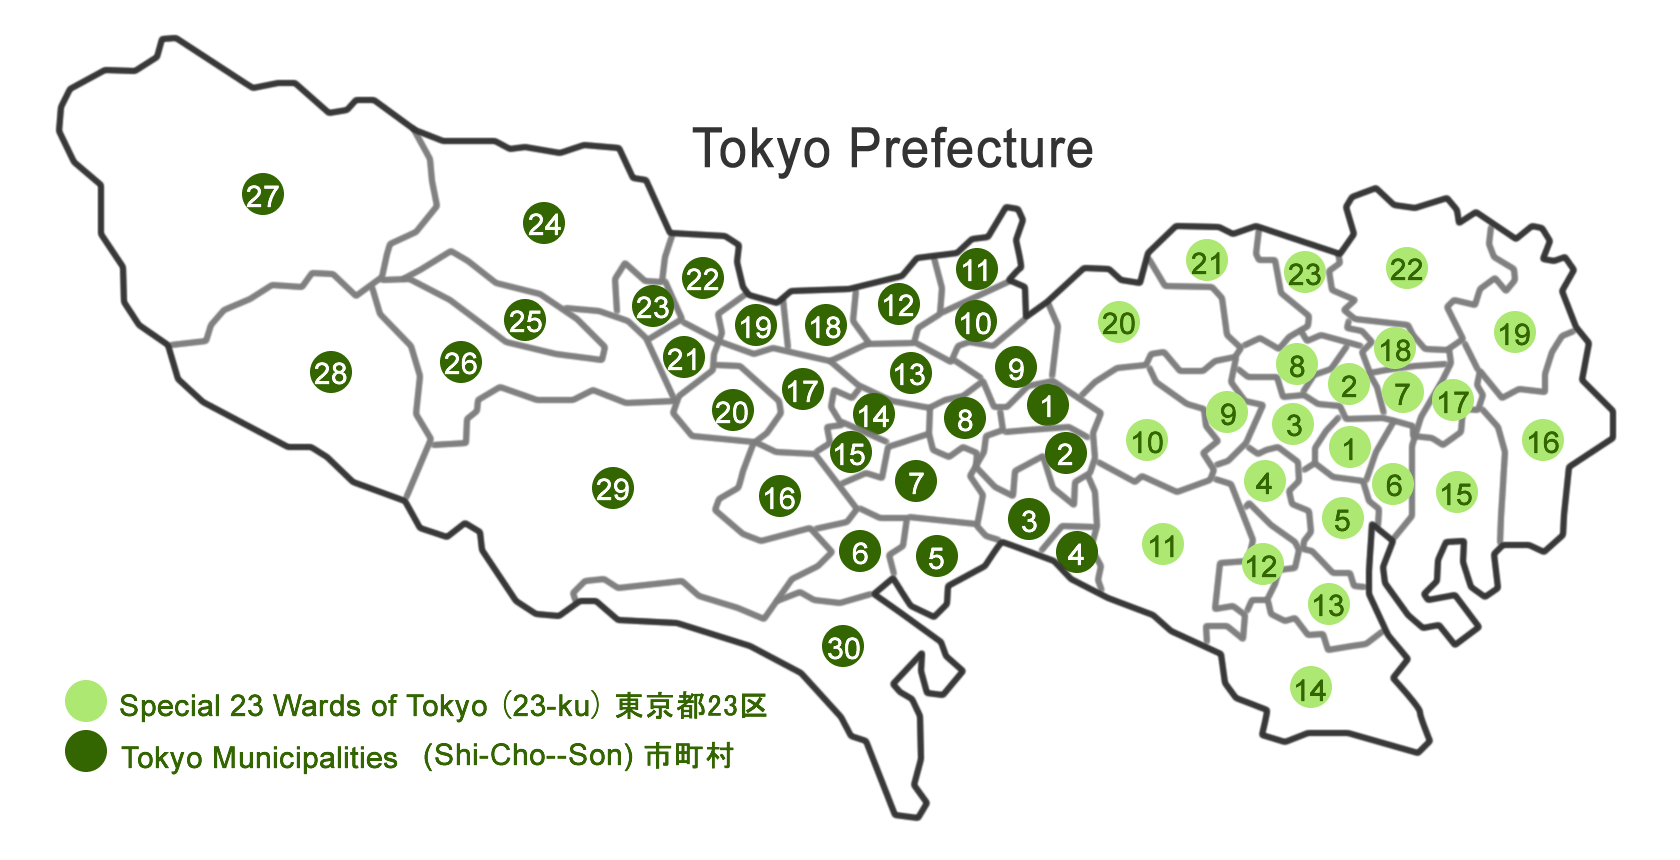 Maps And City Guide Of Tokyo Digi Joho Tokyo